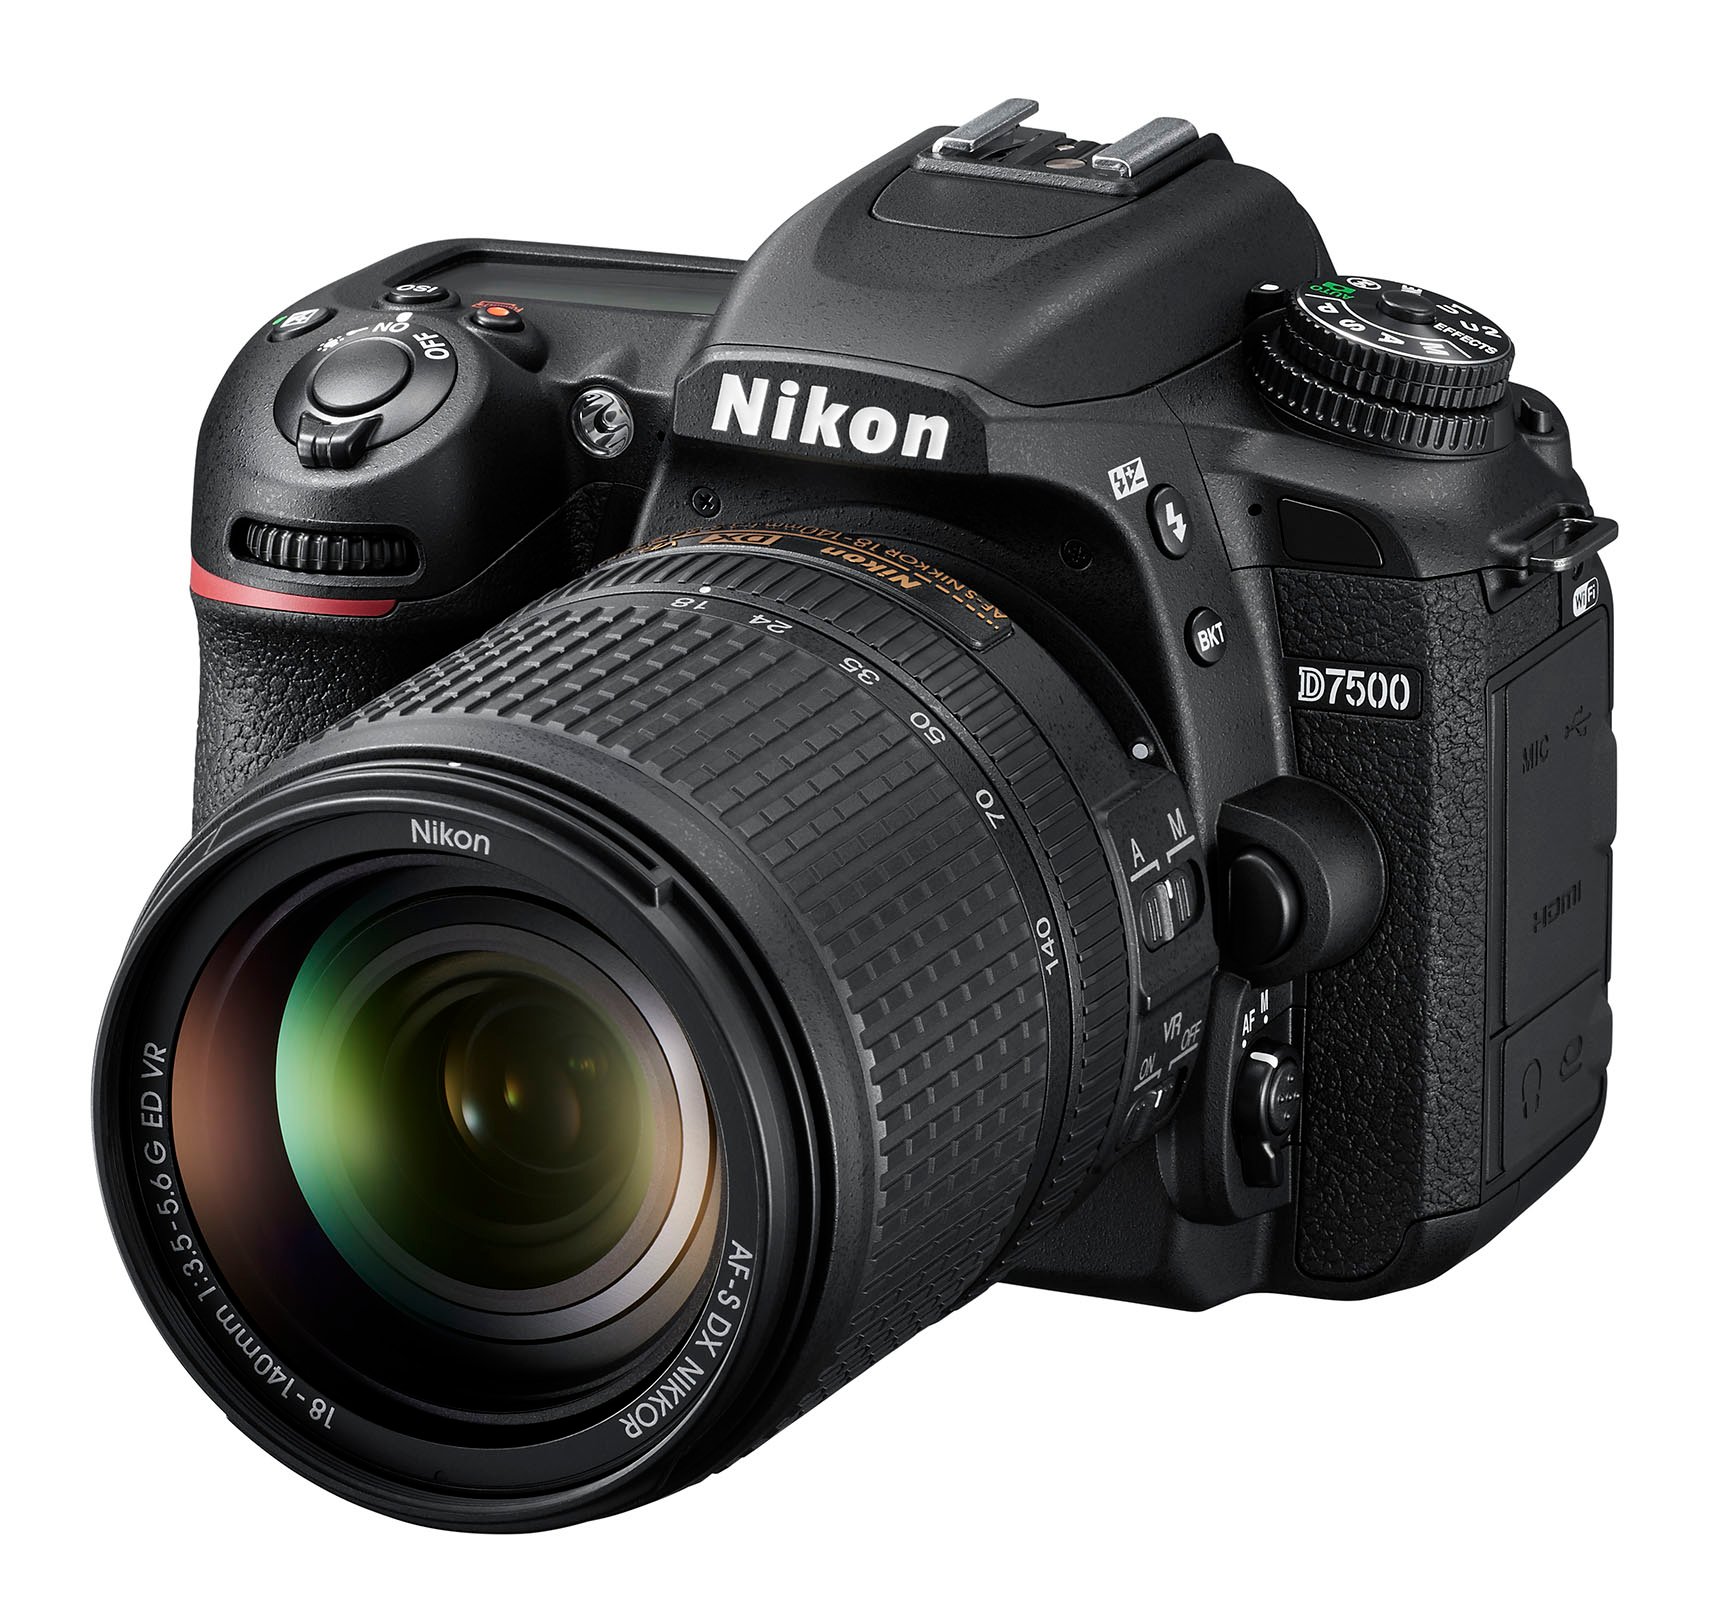 servitrice Hæl Afgørelse Nikon D7500 16-80mm Kit 20.9MP DSLR Camera With AF-S DX NIKKOR 16-80mm F/2.8 -4E ED VR Lens | Full Compass Systems